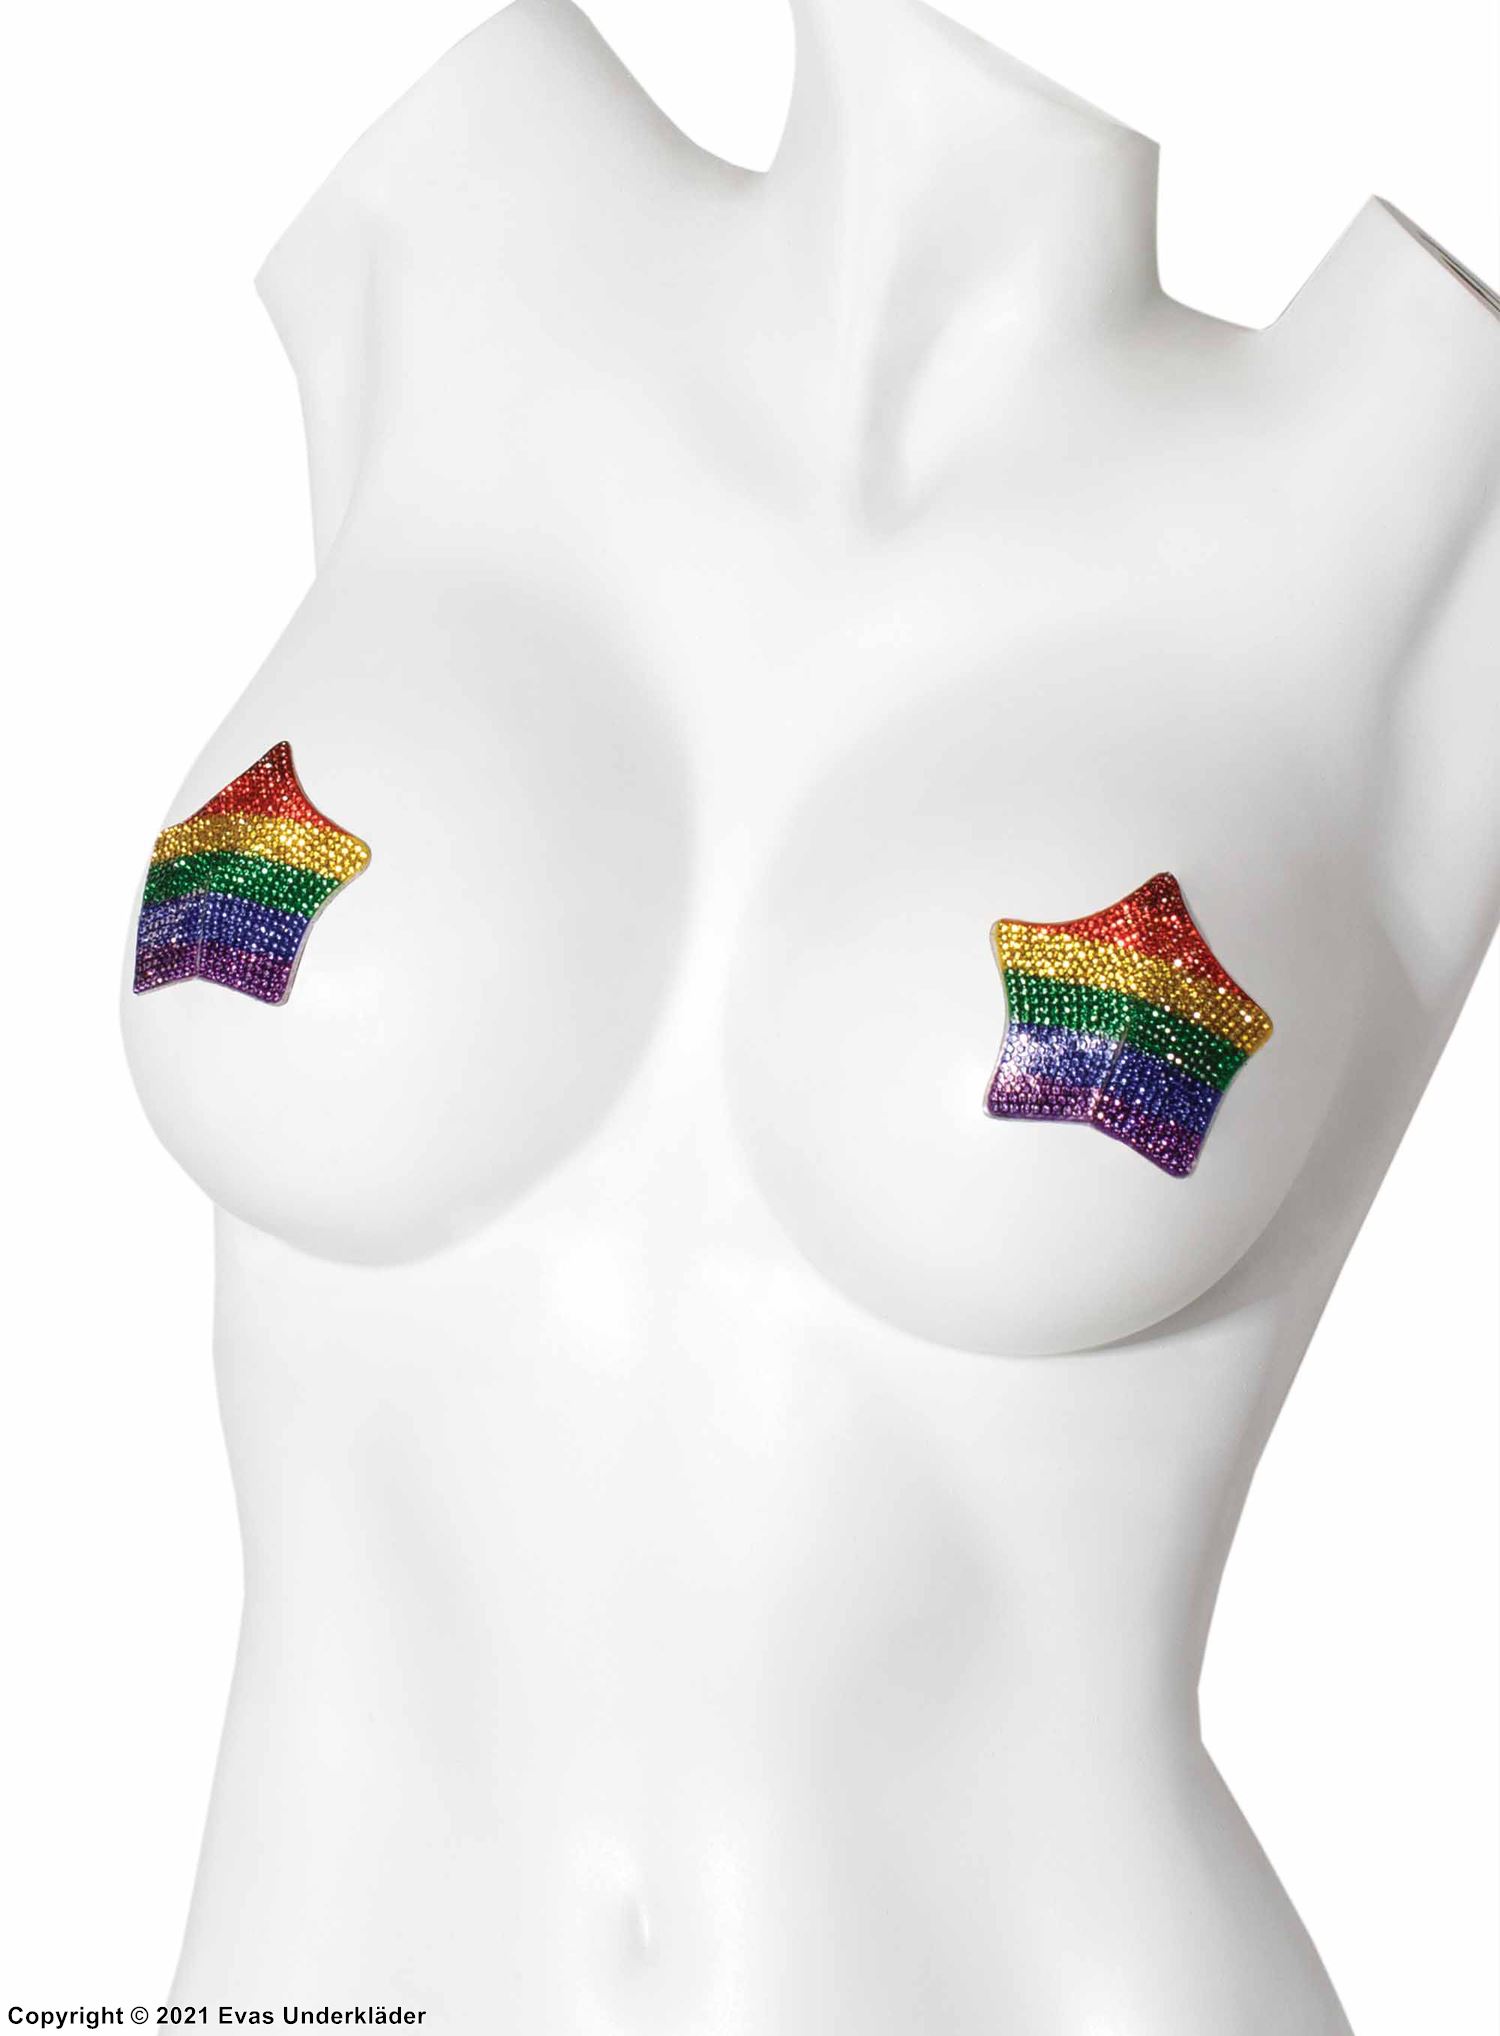 Självhäftande bröstvårtetäckare med strass och stjärnor, regnbågsfärg